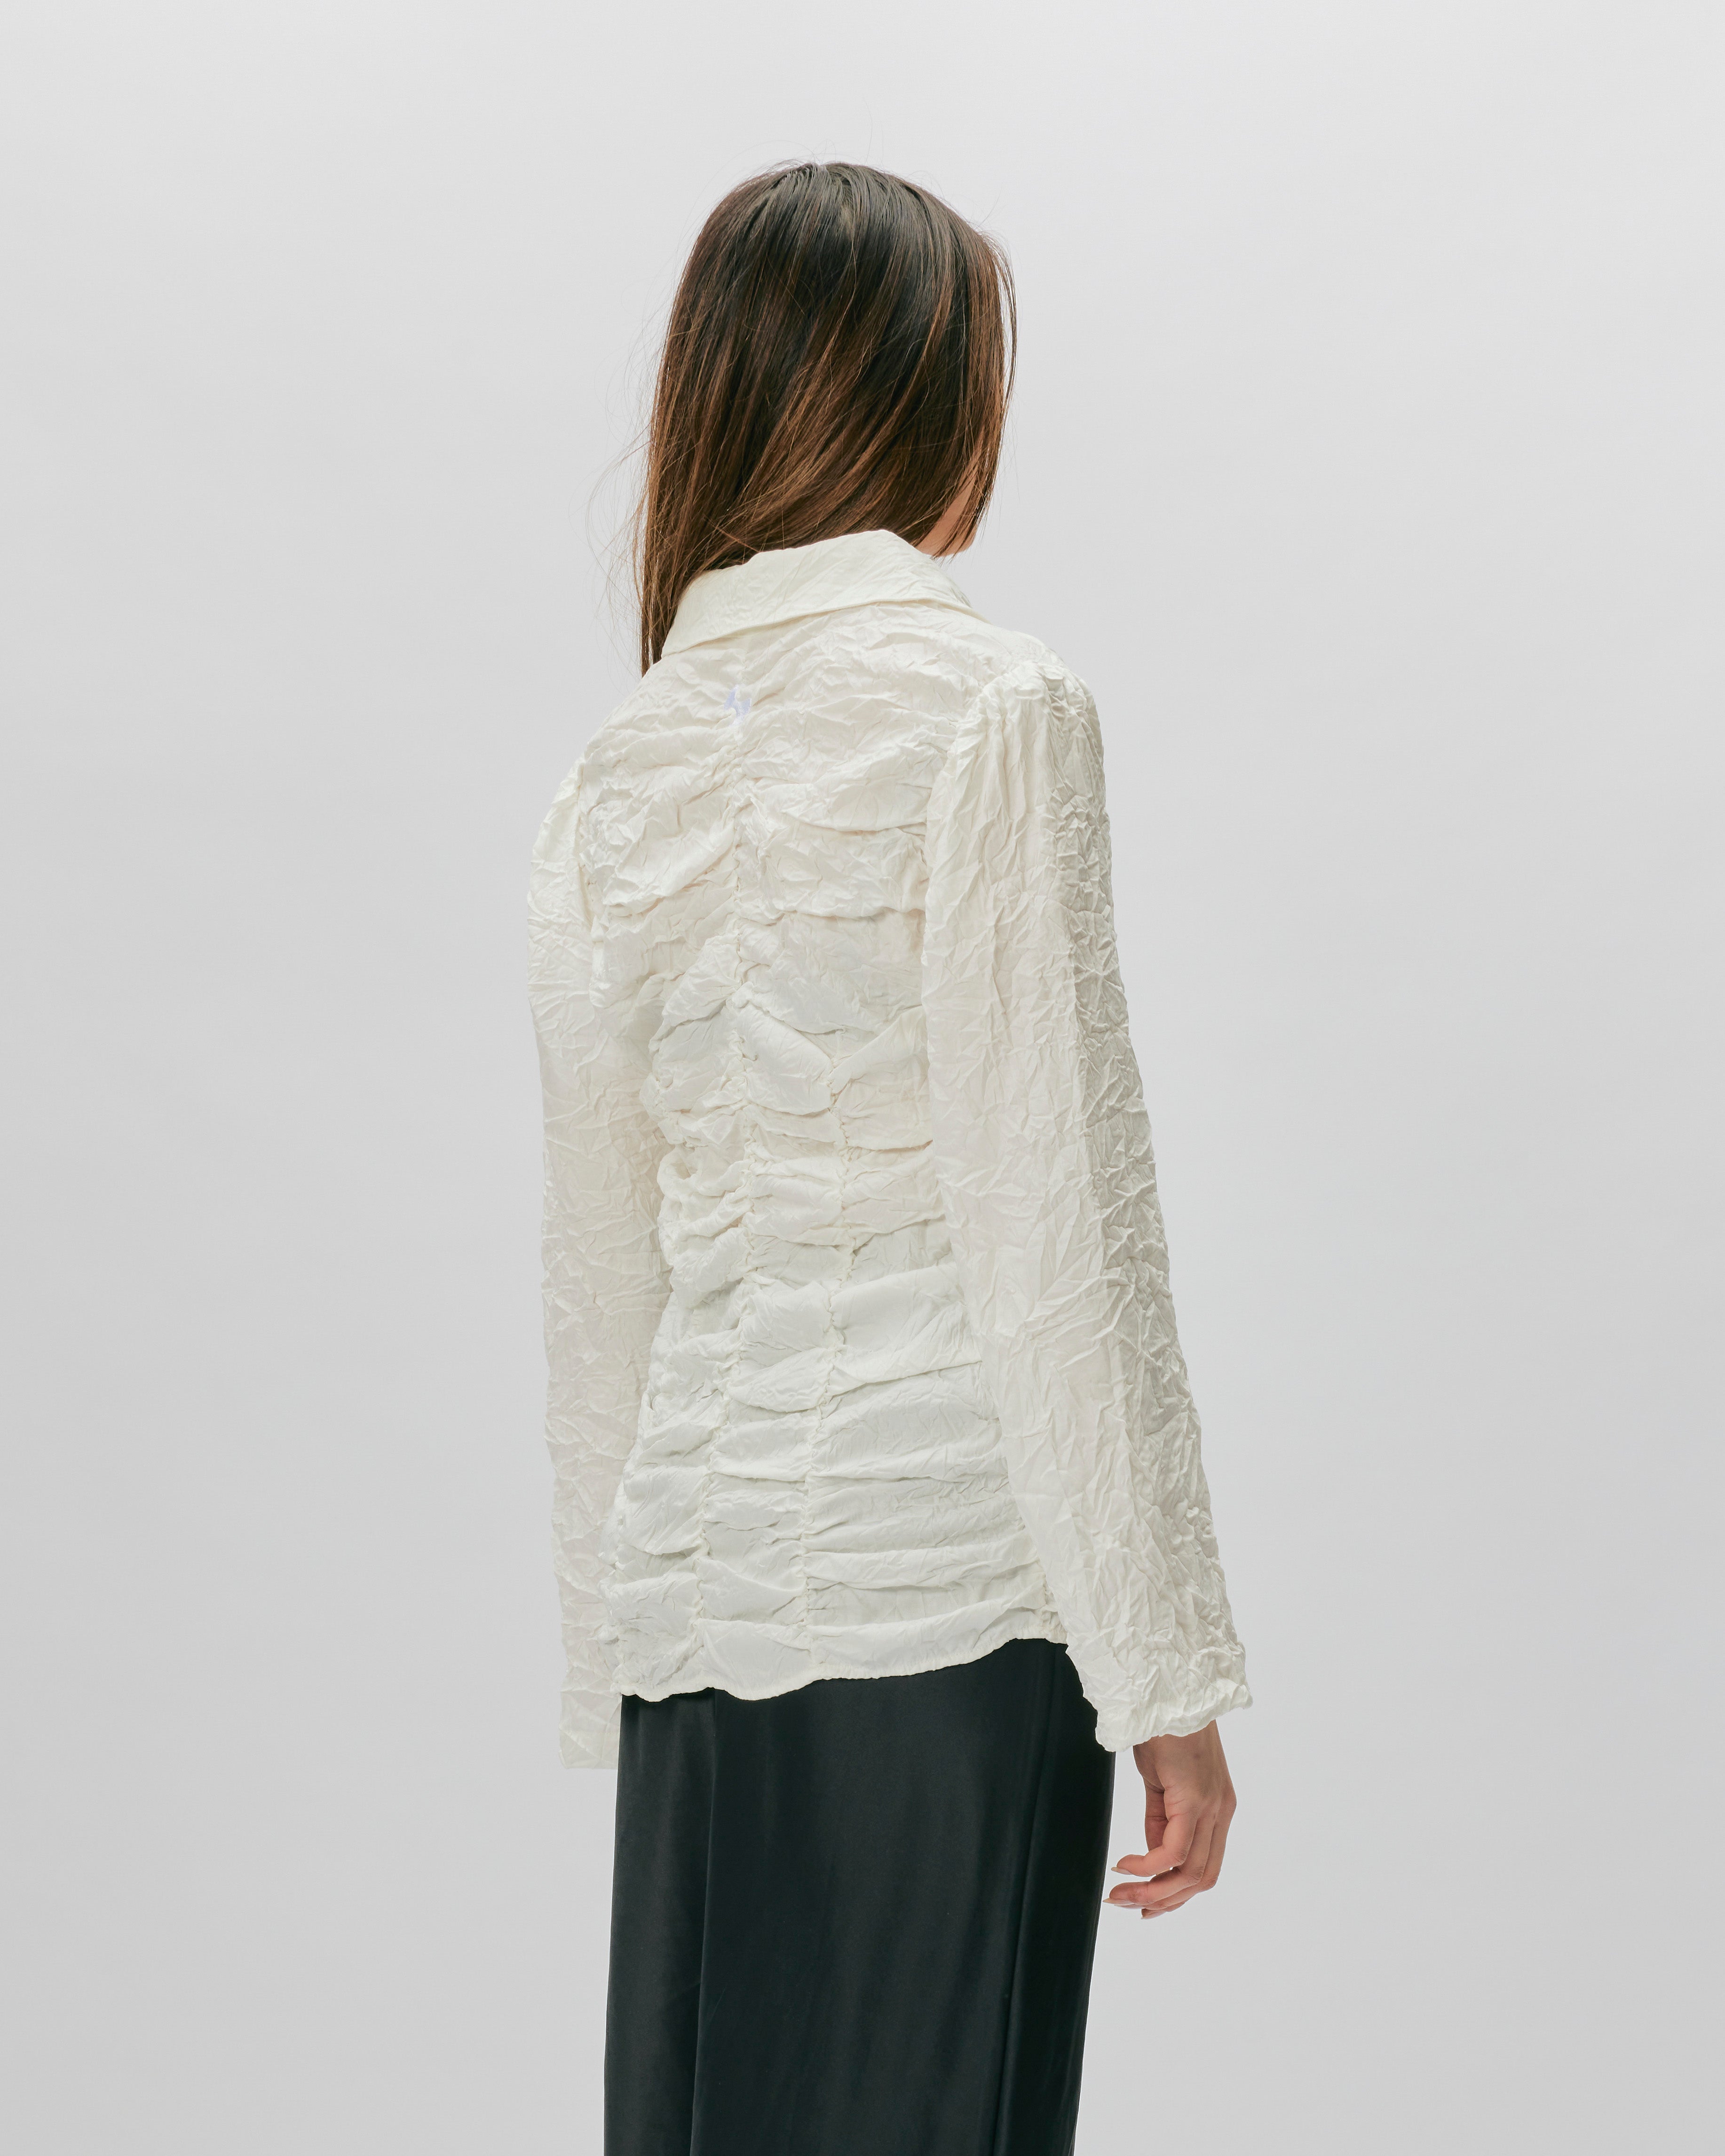 OpéraSPORT Teresa Ruched Shirt WHITE Z33-WHT